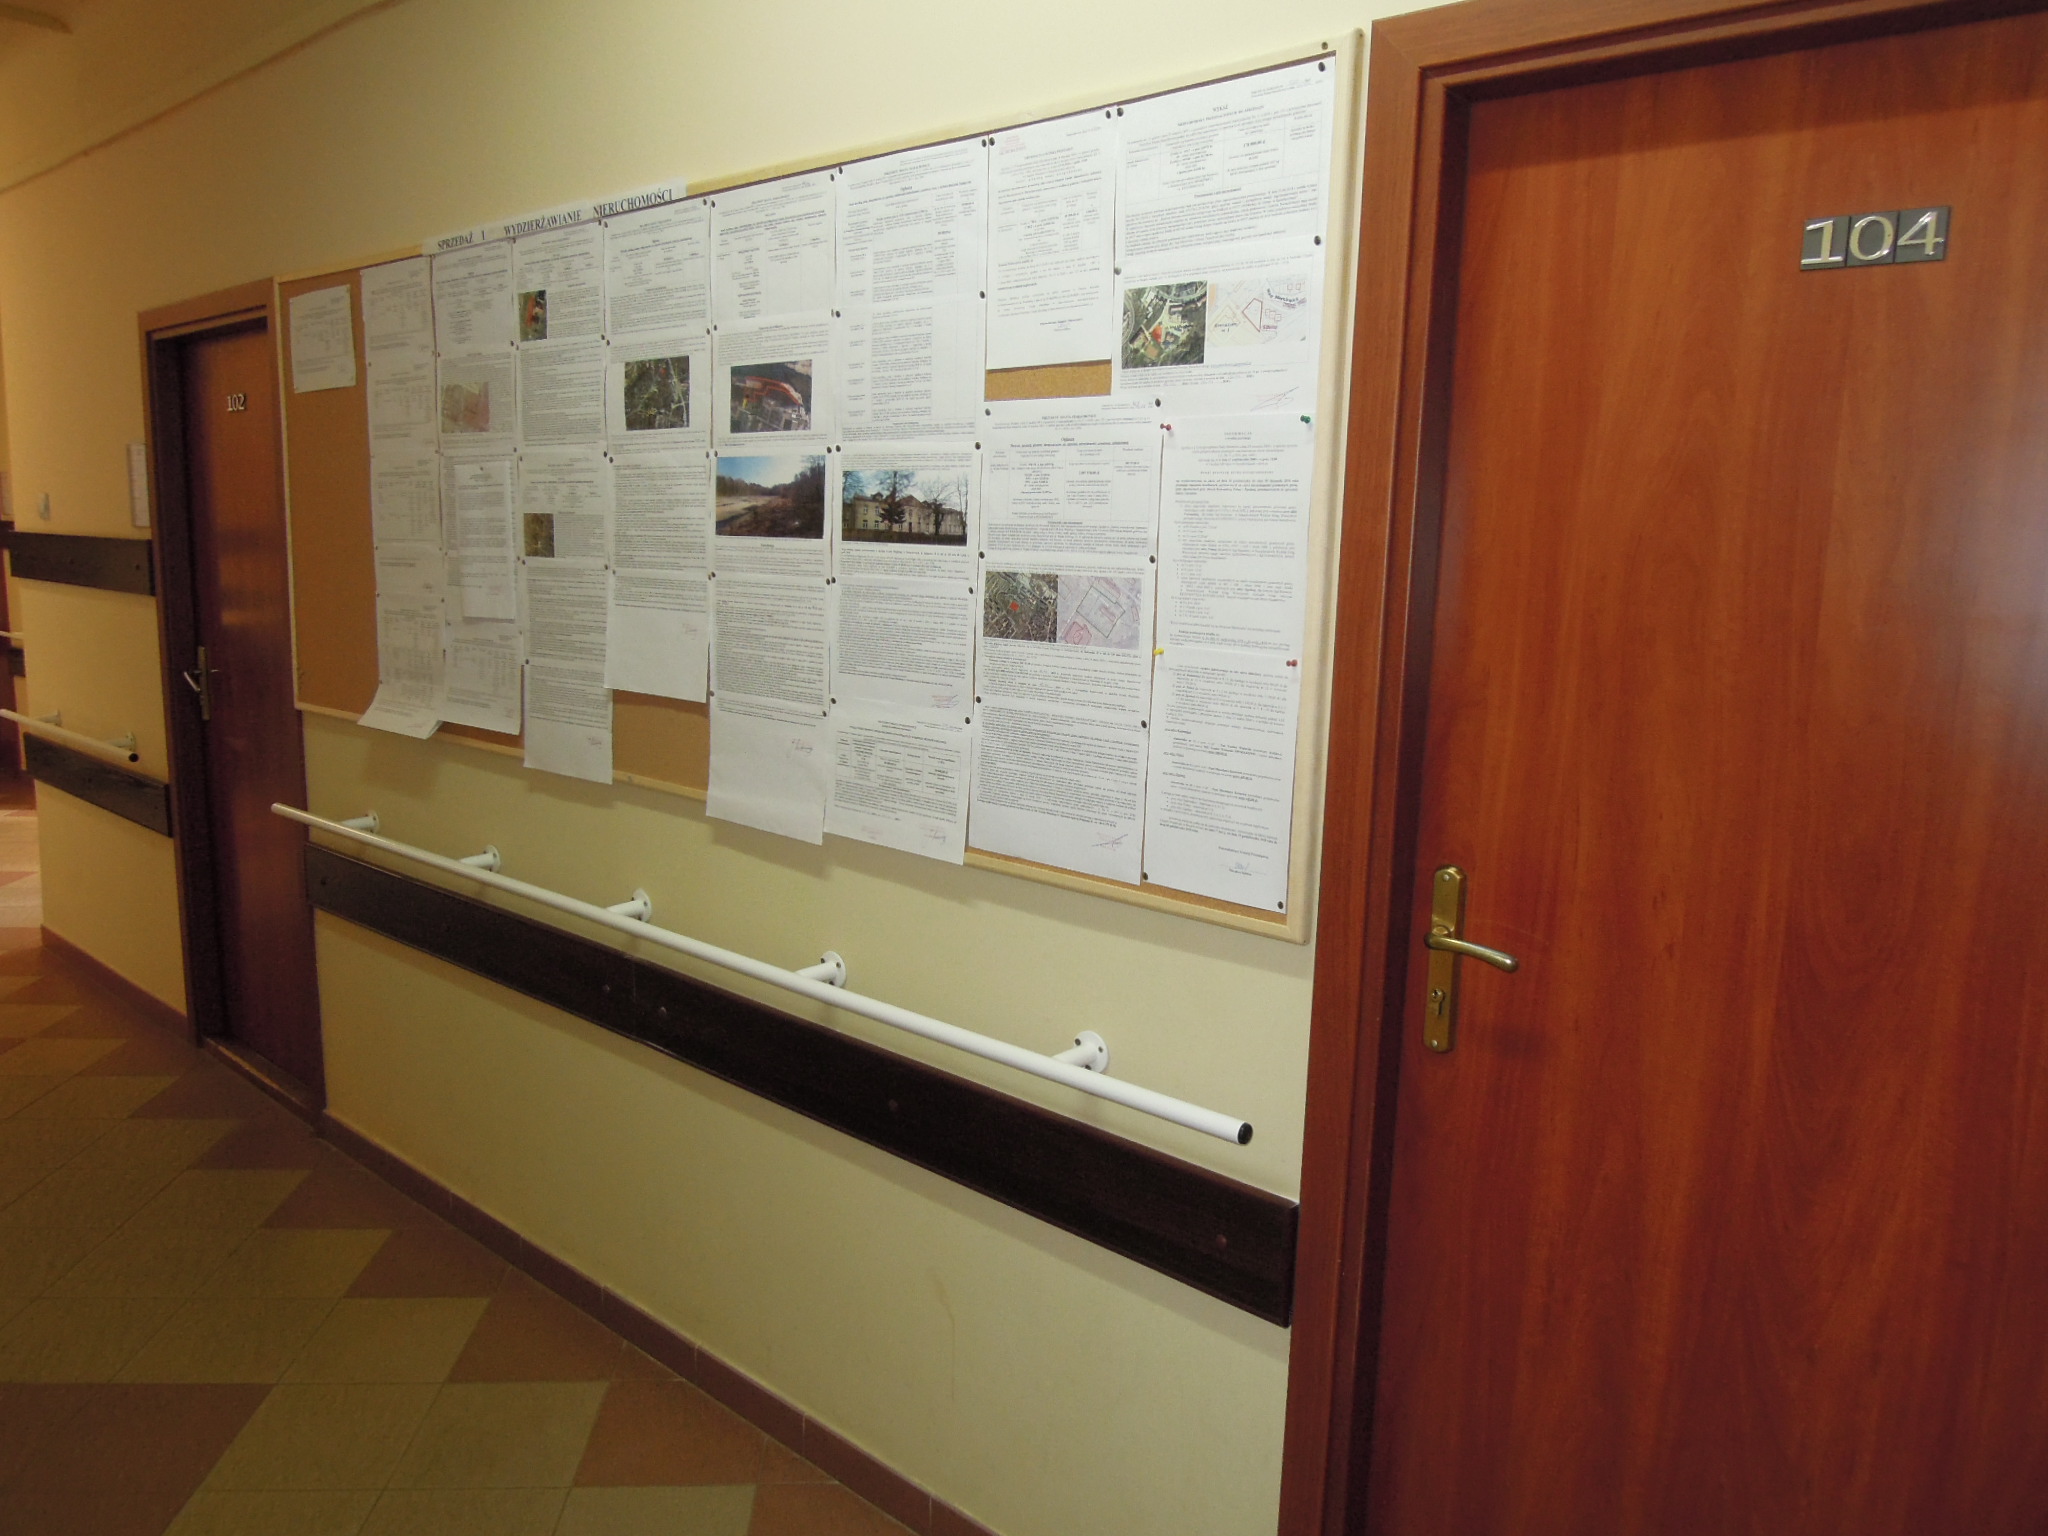 tablica ogłoszeń i piętro budynku Urzędu Miejskiego w Starachowicach images